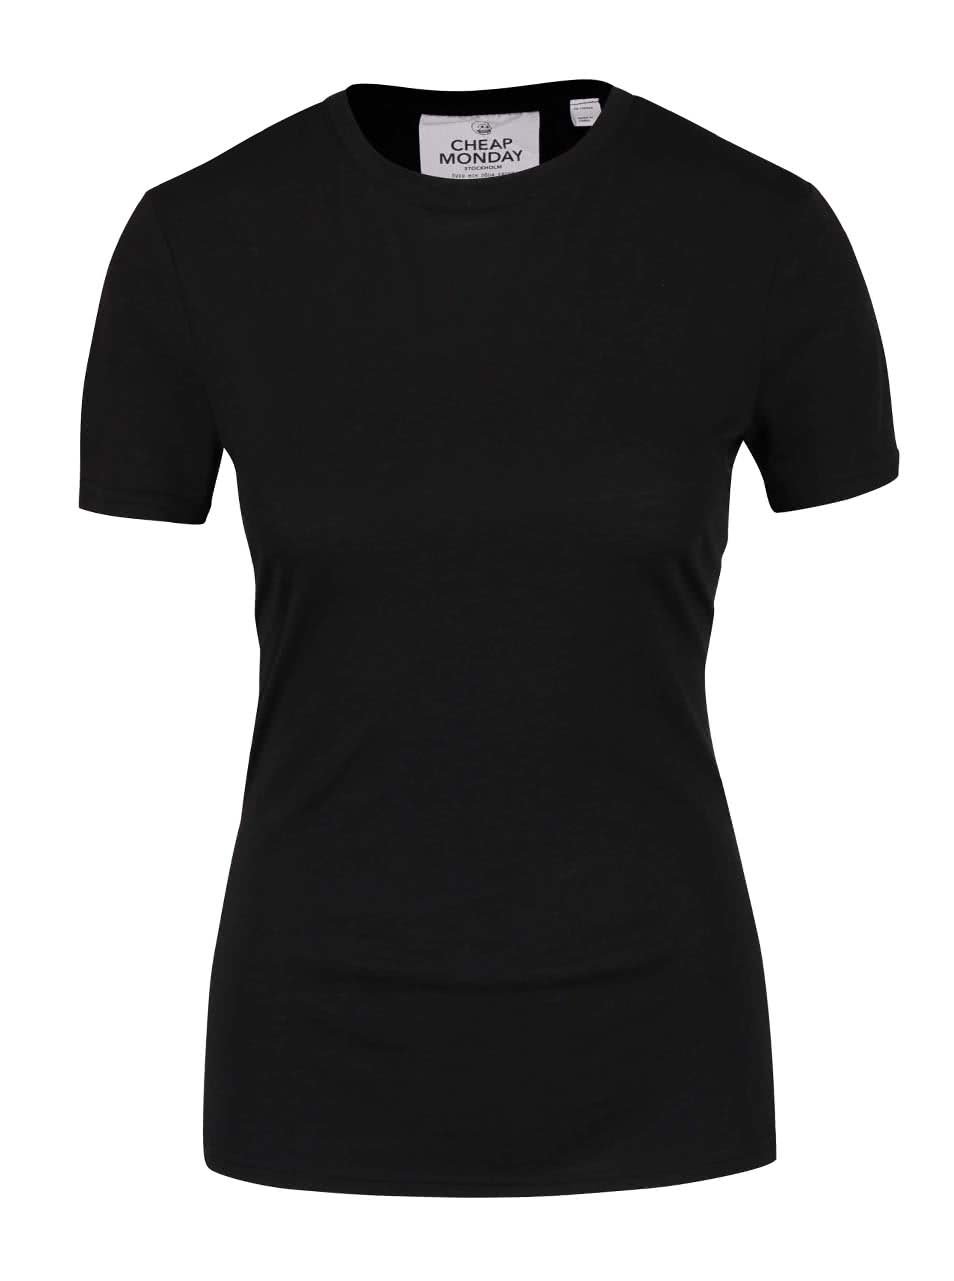 Černé dámské tričko s přezkami Cheap Monday Row